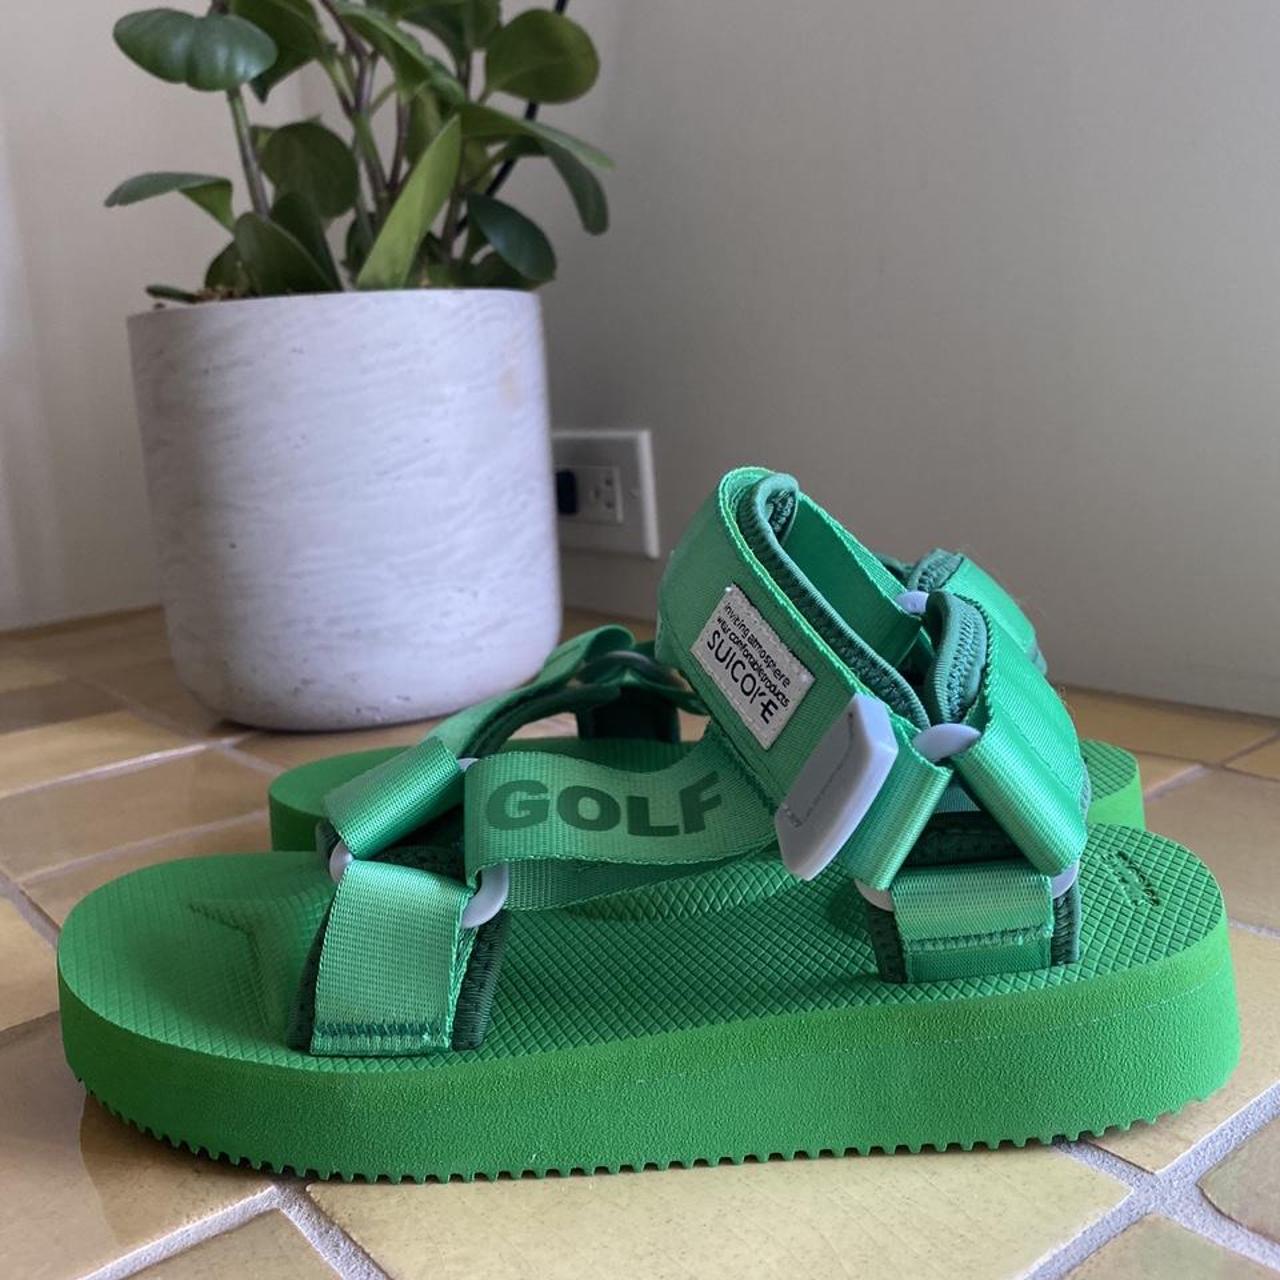 Modernisering Ligatie Geladen Golf Wang Men's Green Sandals | Depop